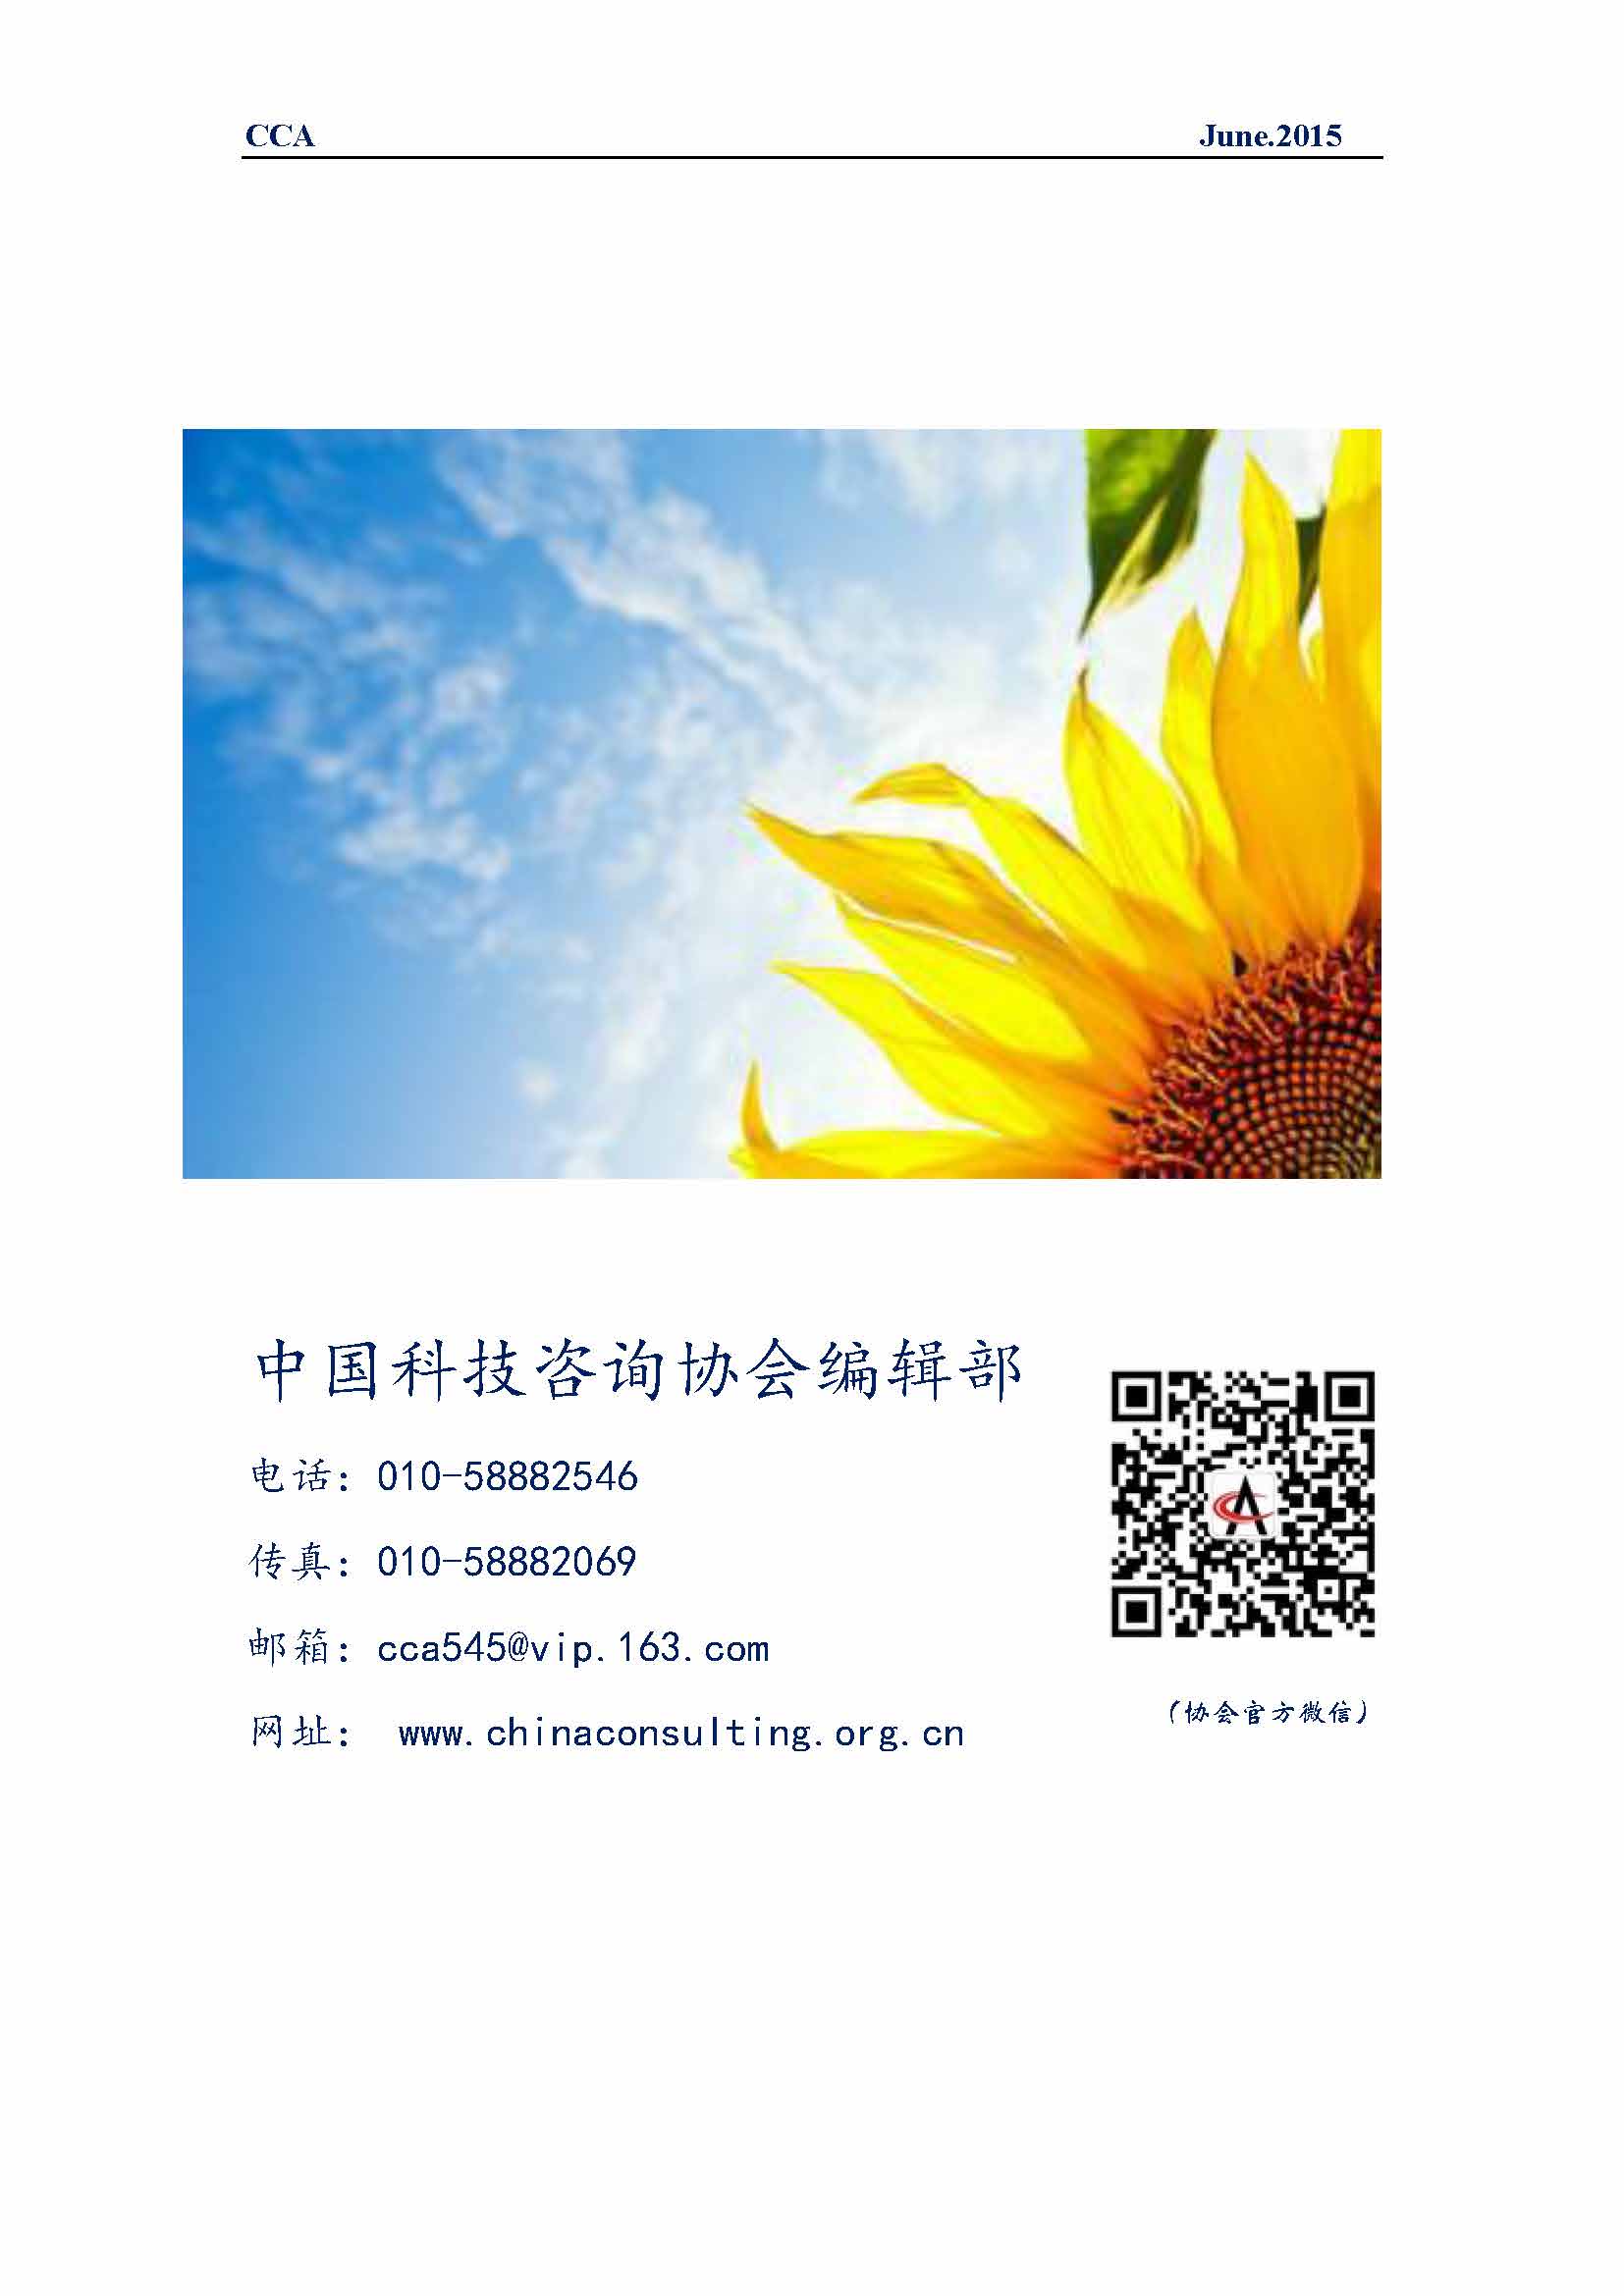 中国科技咨询协会国际快讯（第二十四期）_页面_10.jpg